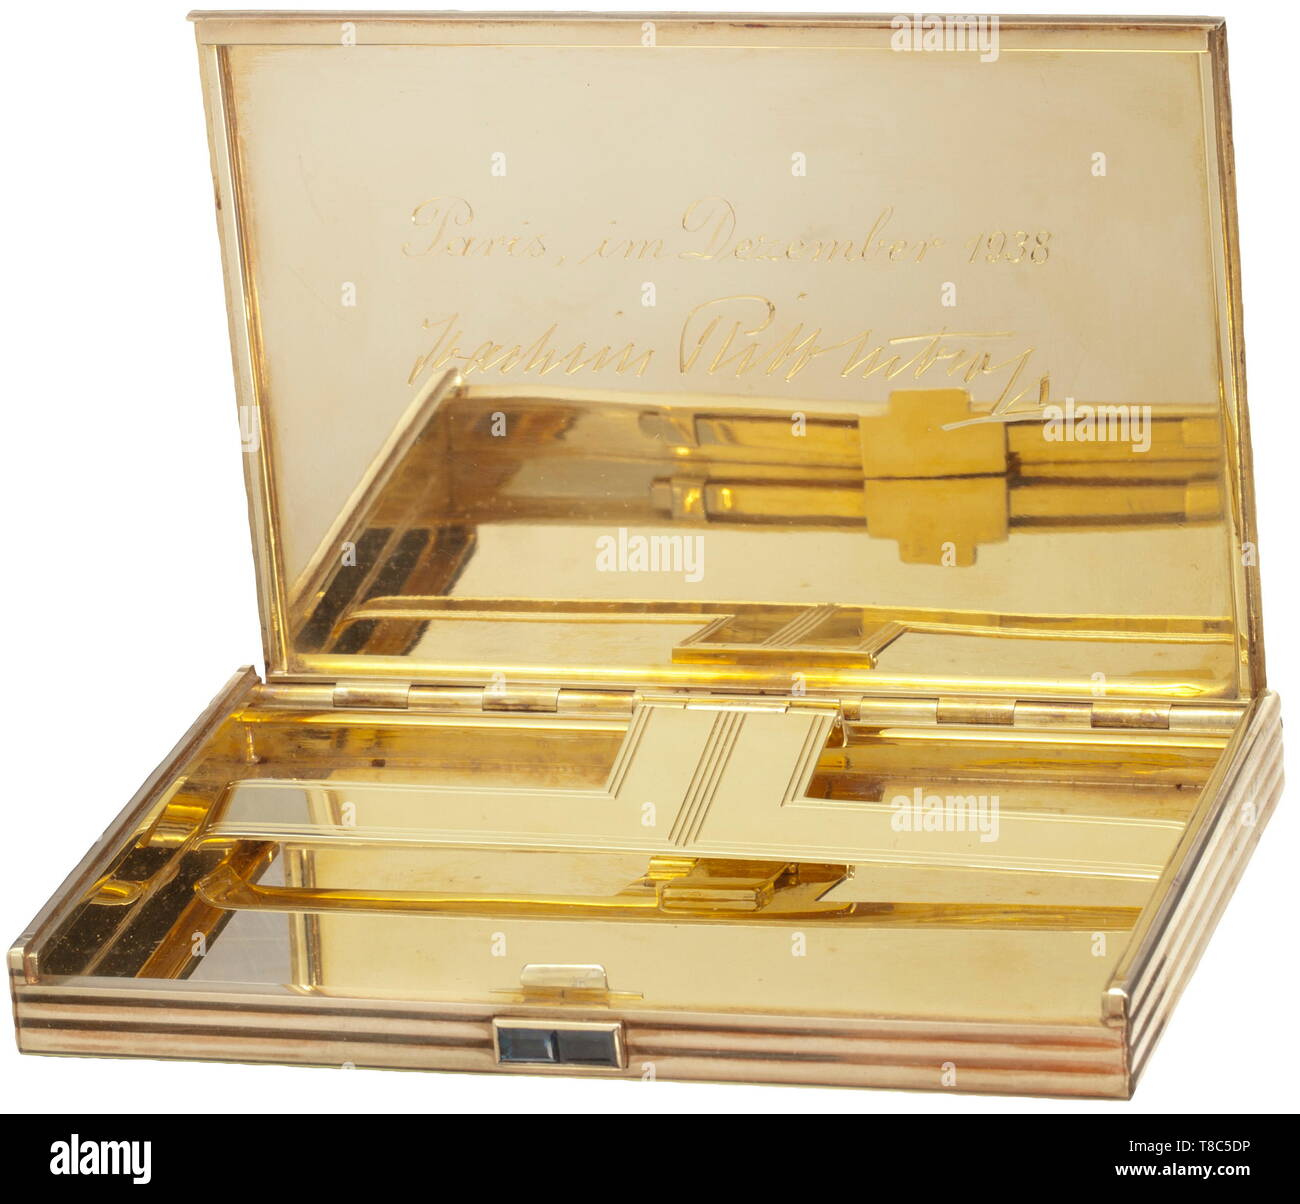 18 Karat Gold Cigarette Holder Case British Style